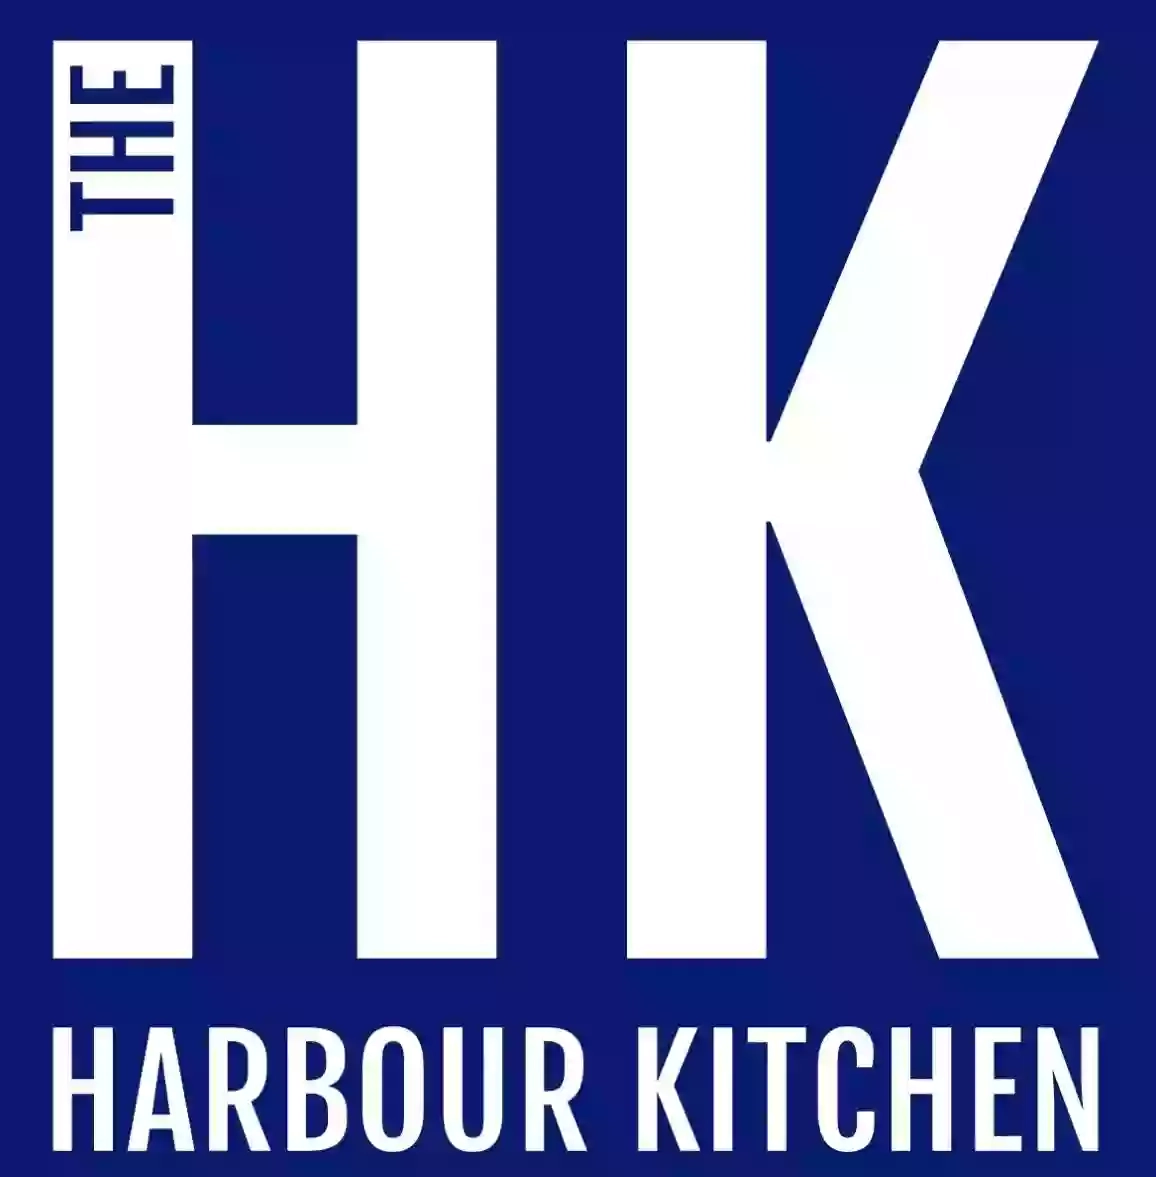 Harbour Kitchen